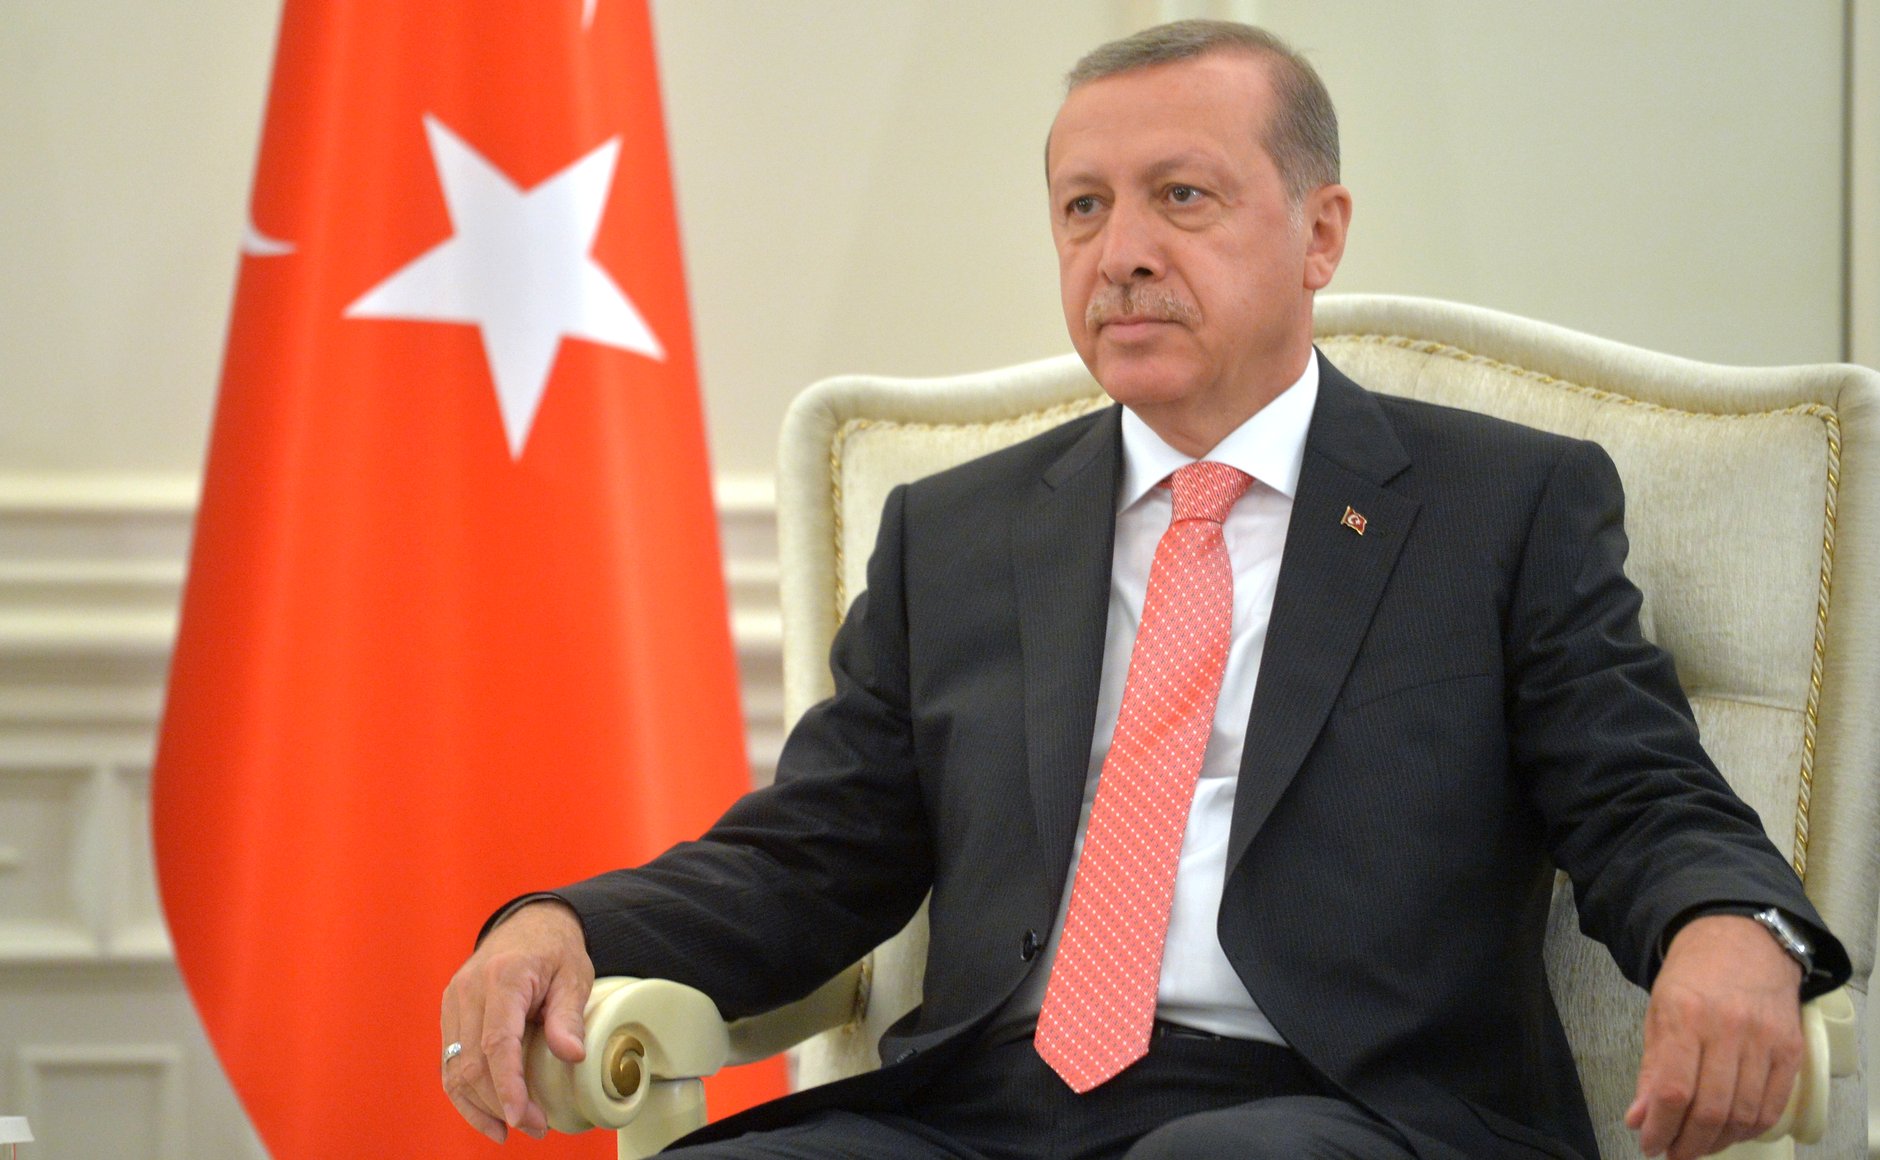 Turecký prezident Recep Tayyip Erdogan před týdnem prohlásil, že nikdy nedovolí vznik kurdského státu u jižních hranic Turecka 